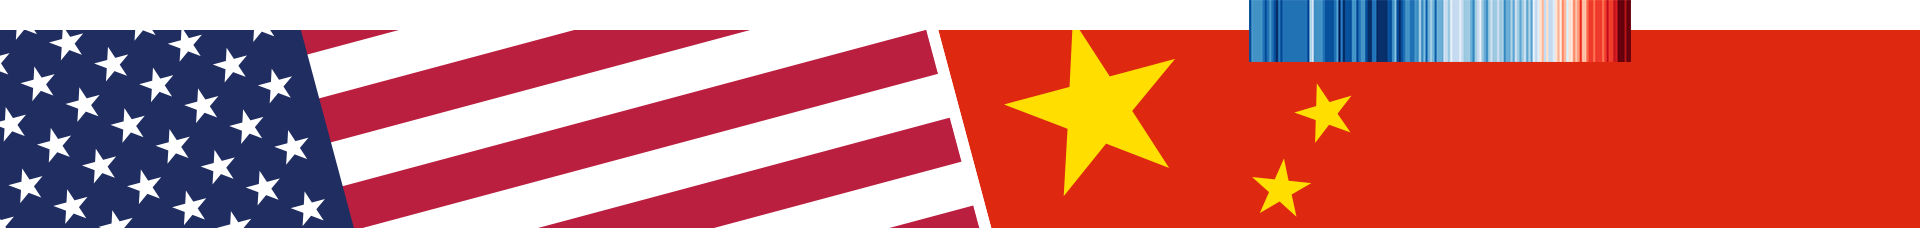 Una pancarta de las banderas estadounidense y china.